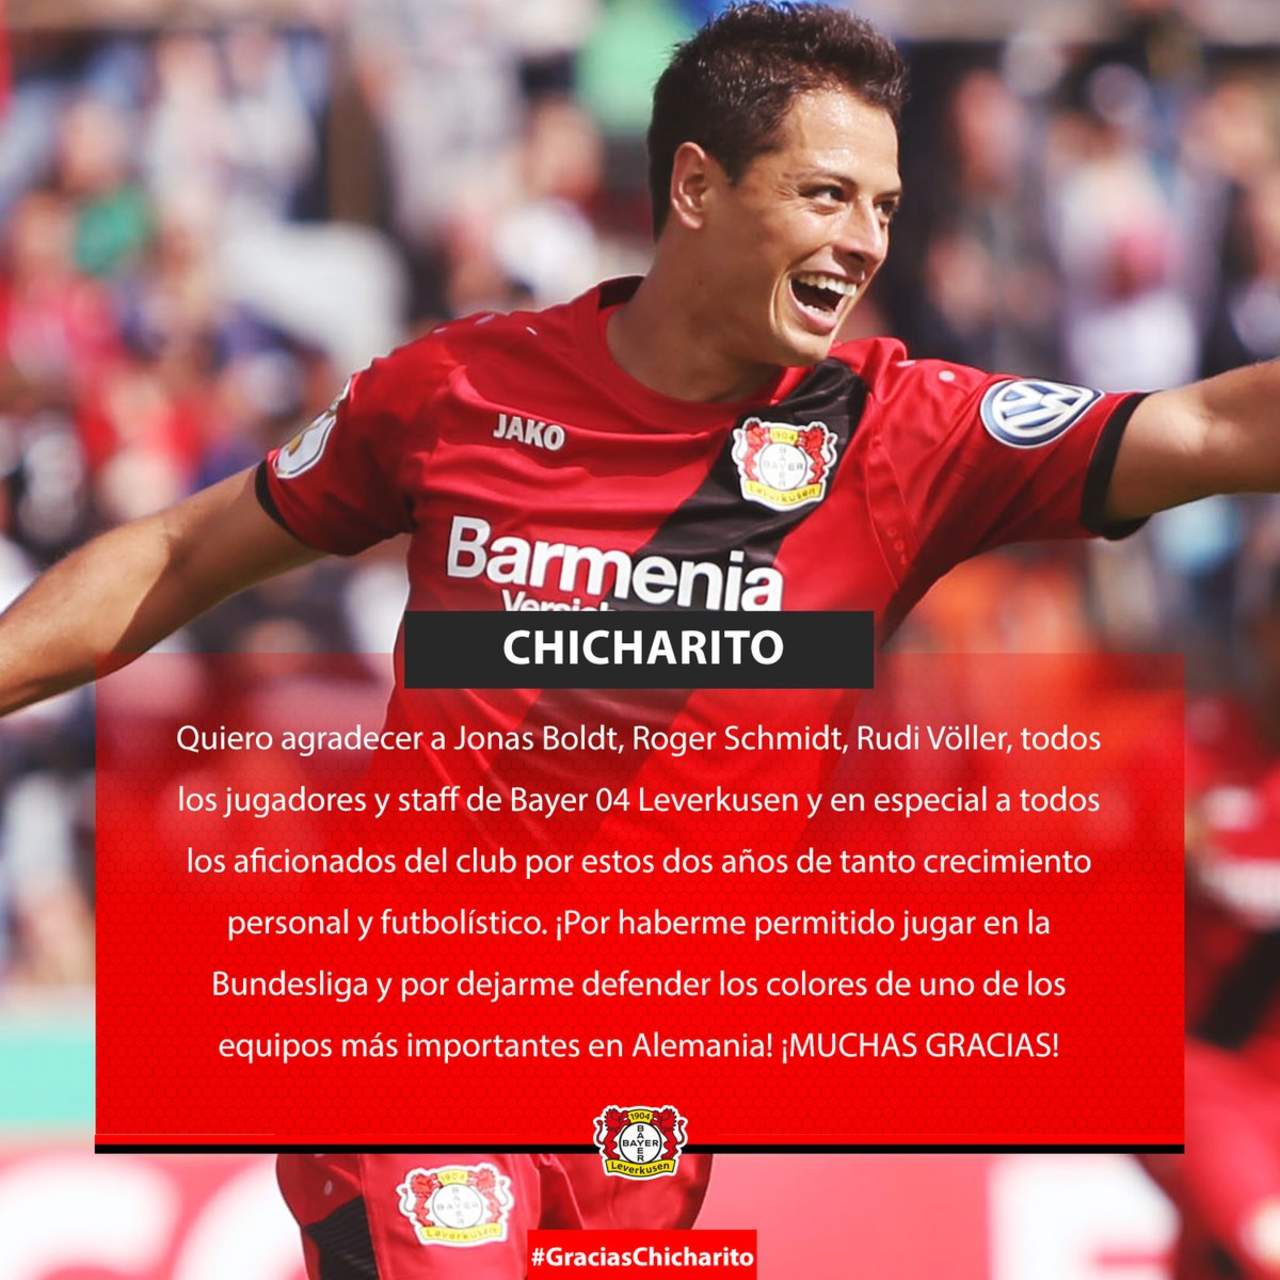 El Bayer Leverkusen retomó lo escrito por Hernández y agradeció al atacante mexicano por los dos años que defendió su playera.